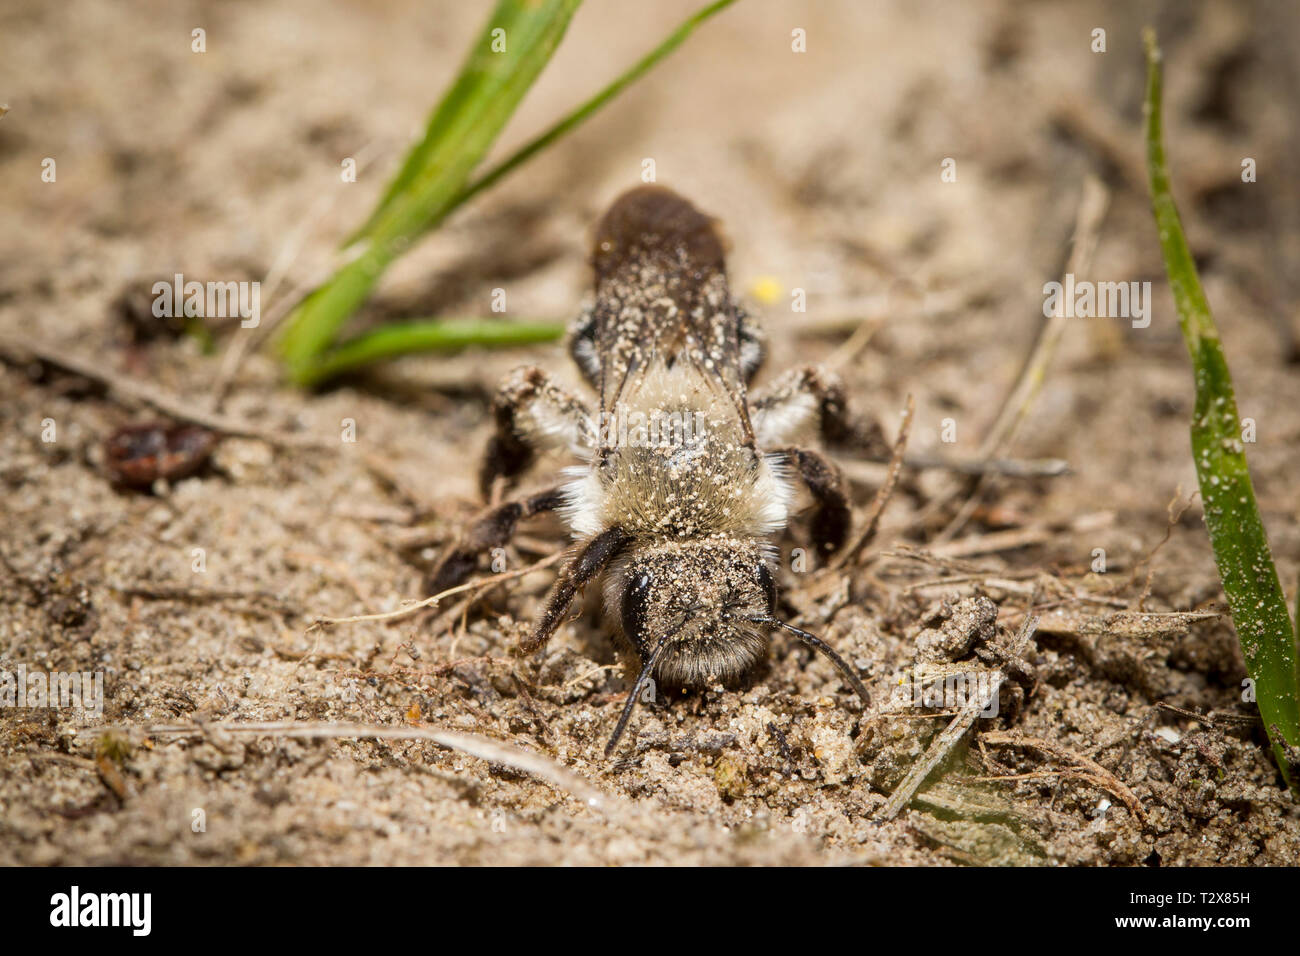 Auensandbiene, Andrena vaga, grey-backed mining bee Stock Photo